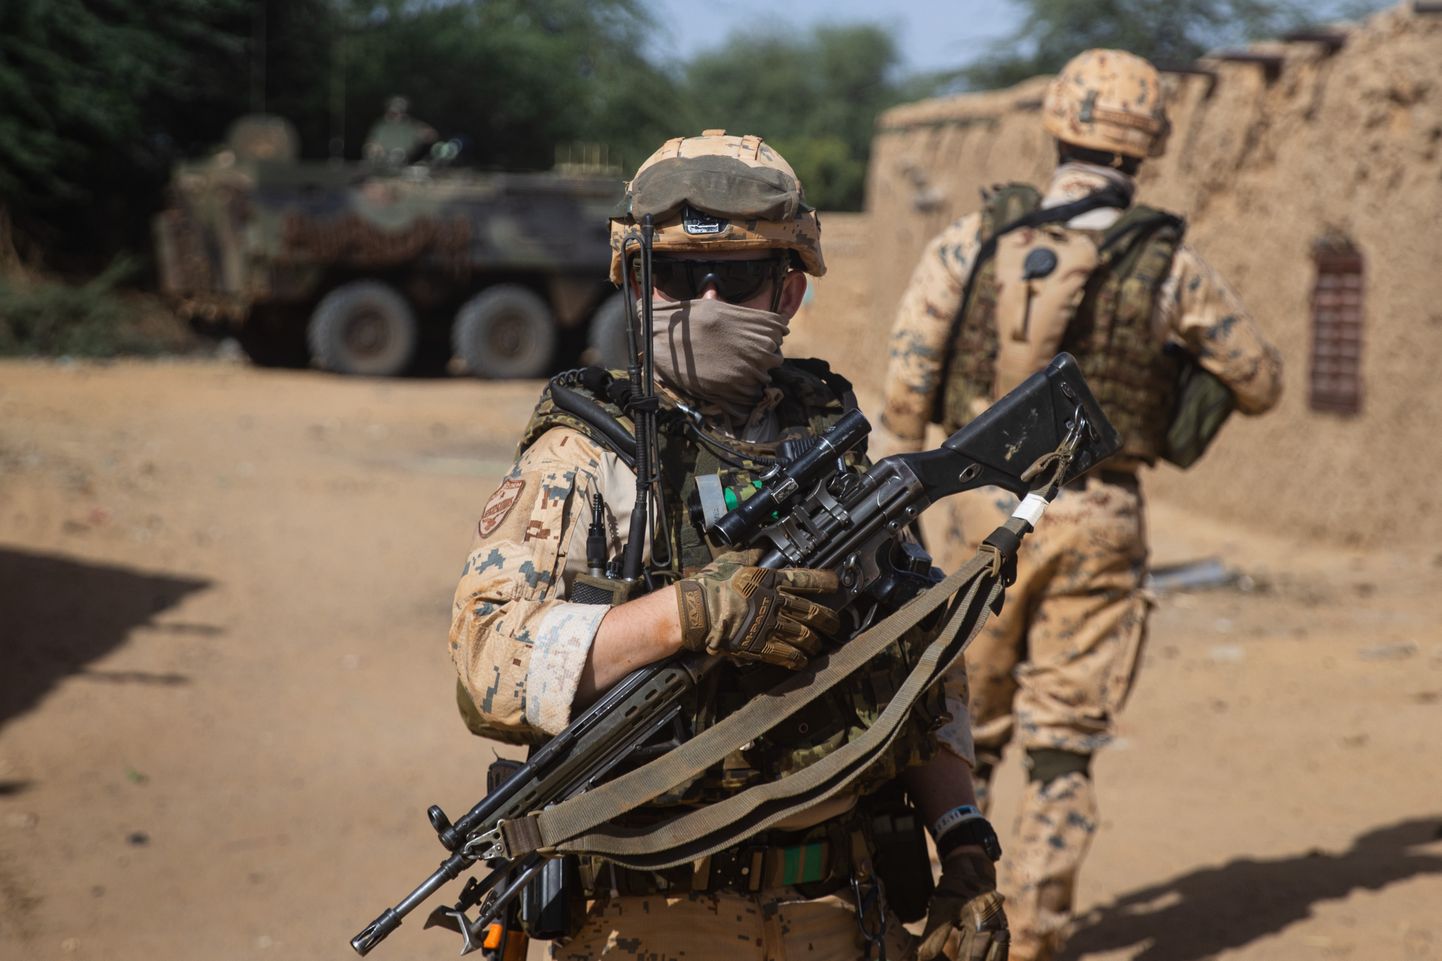 Эстонские военнослужащие на миссии в Мали. Изображенные на снимке военные не связаны с инцидентом.